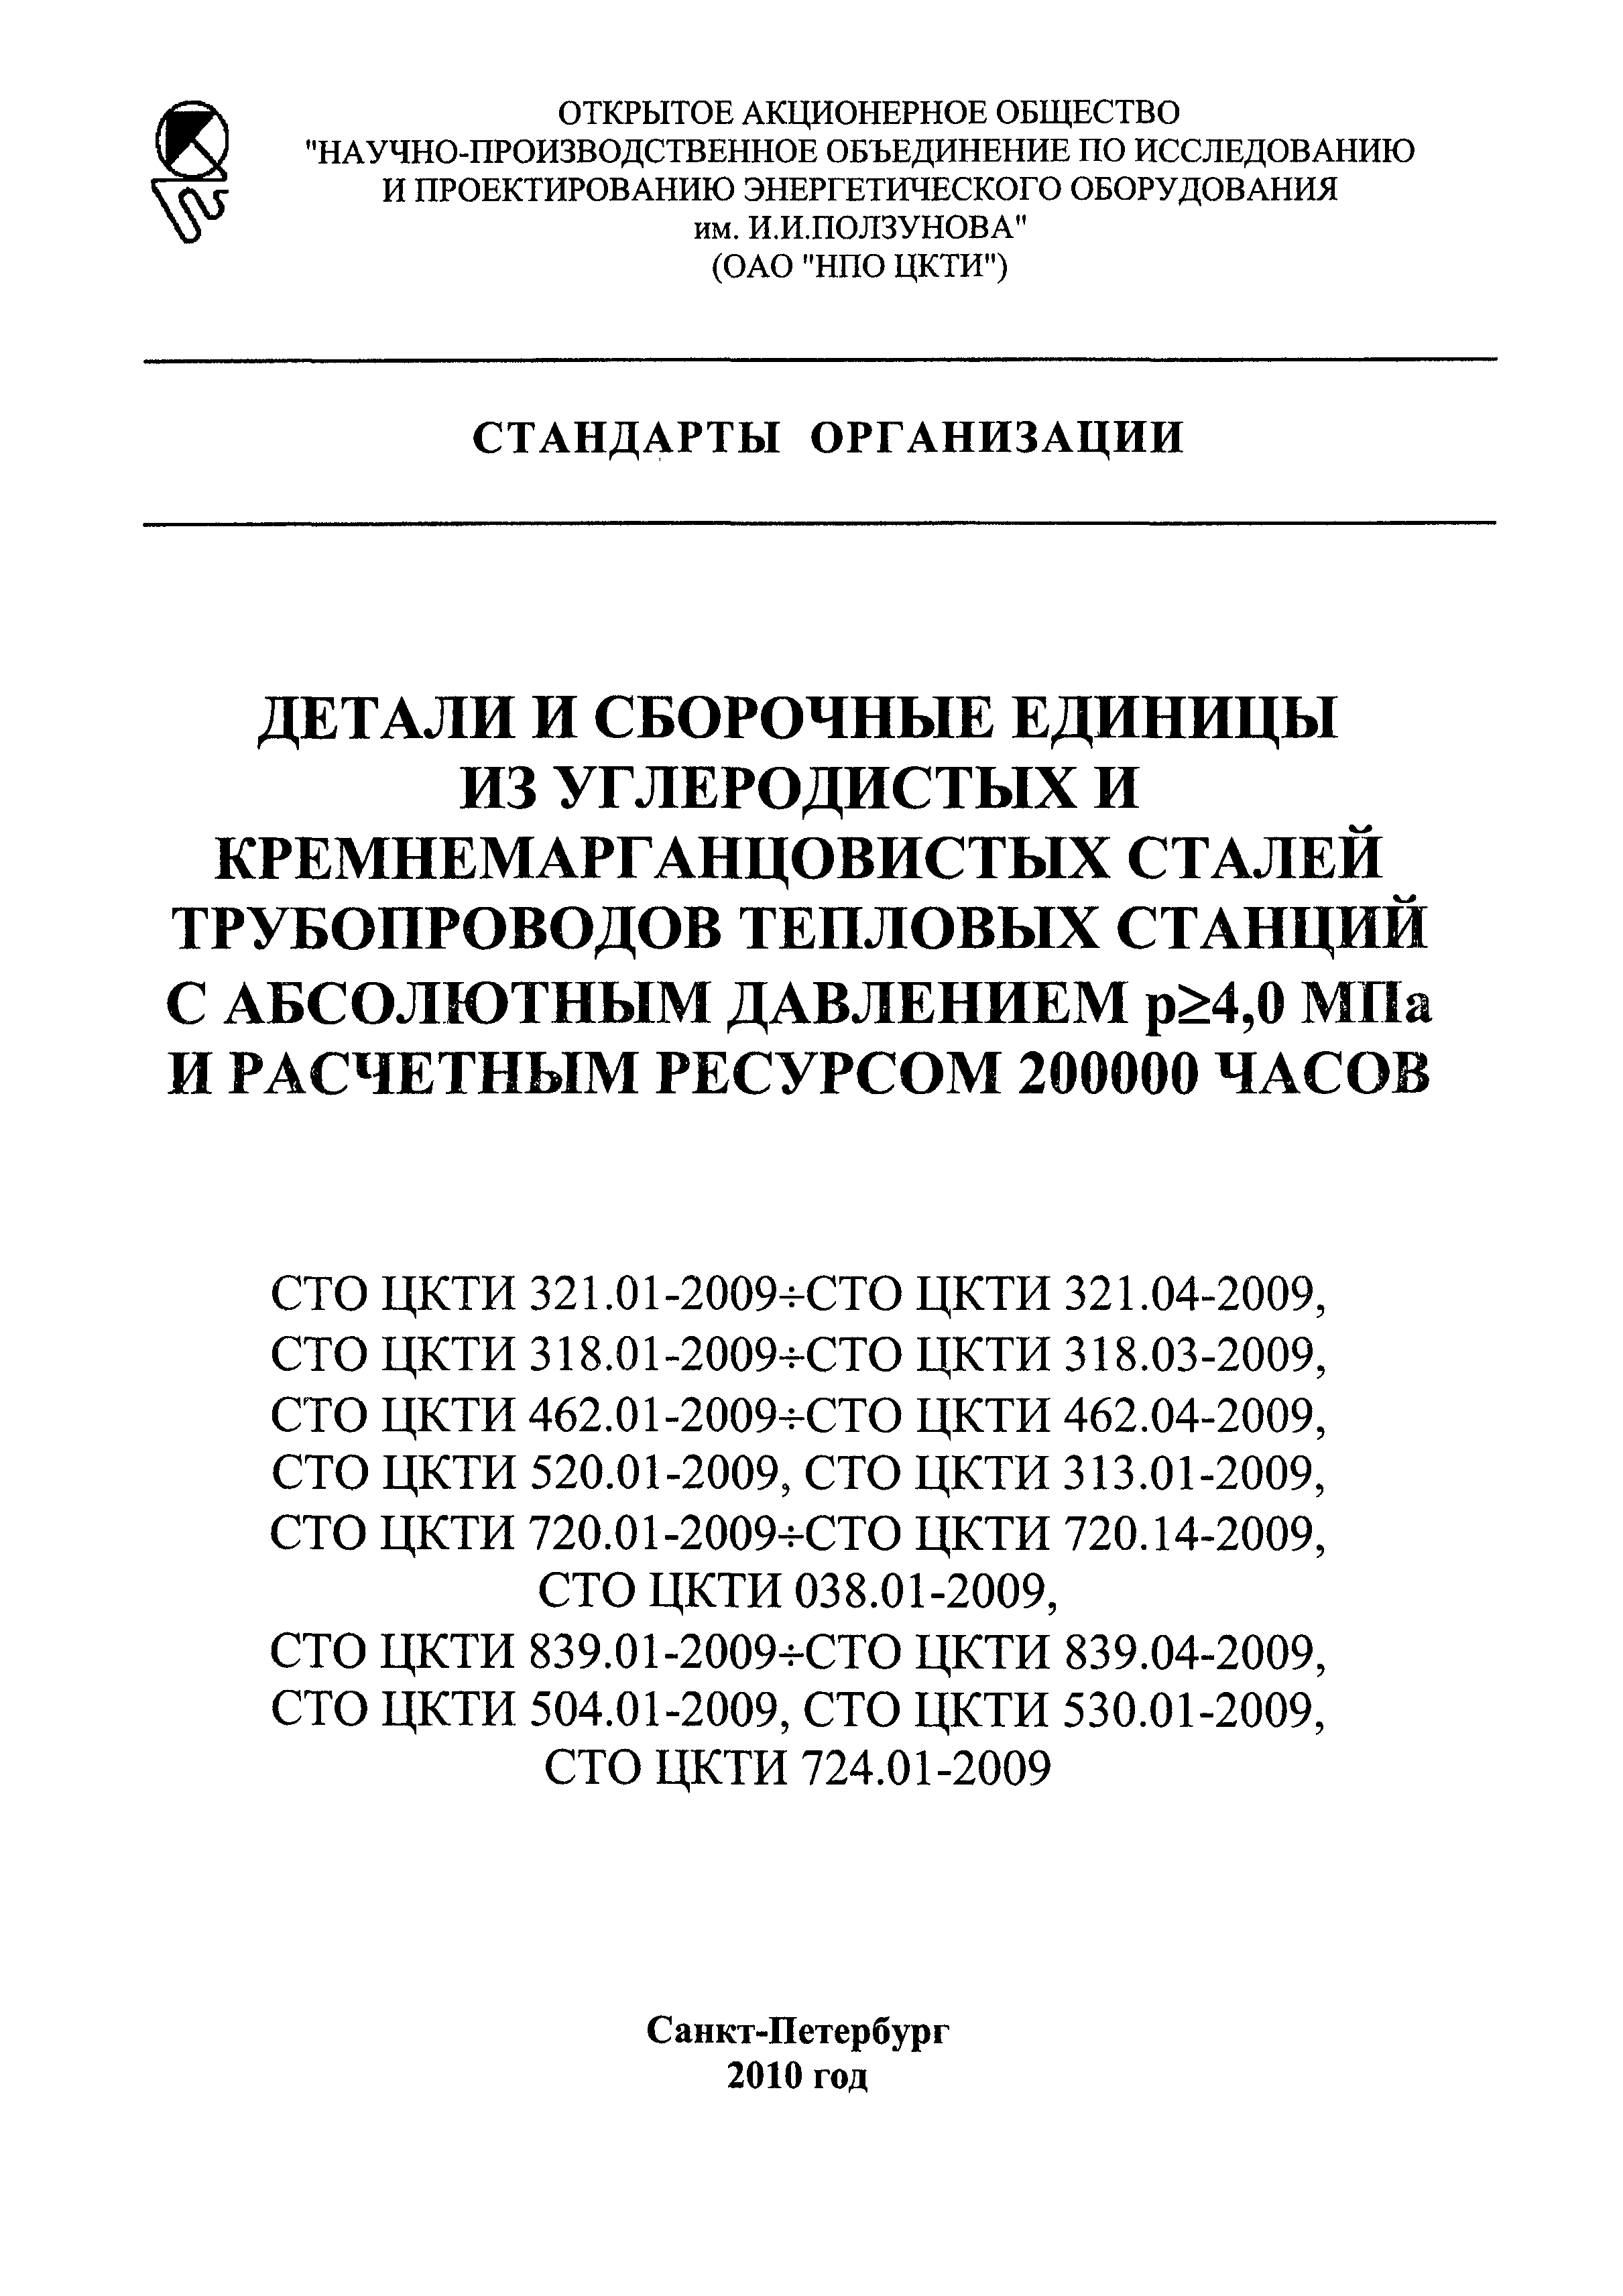 СТО ЦКТИ 530.01-2009